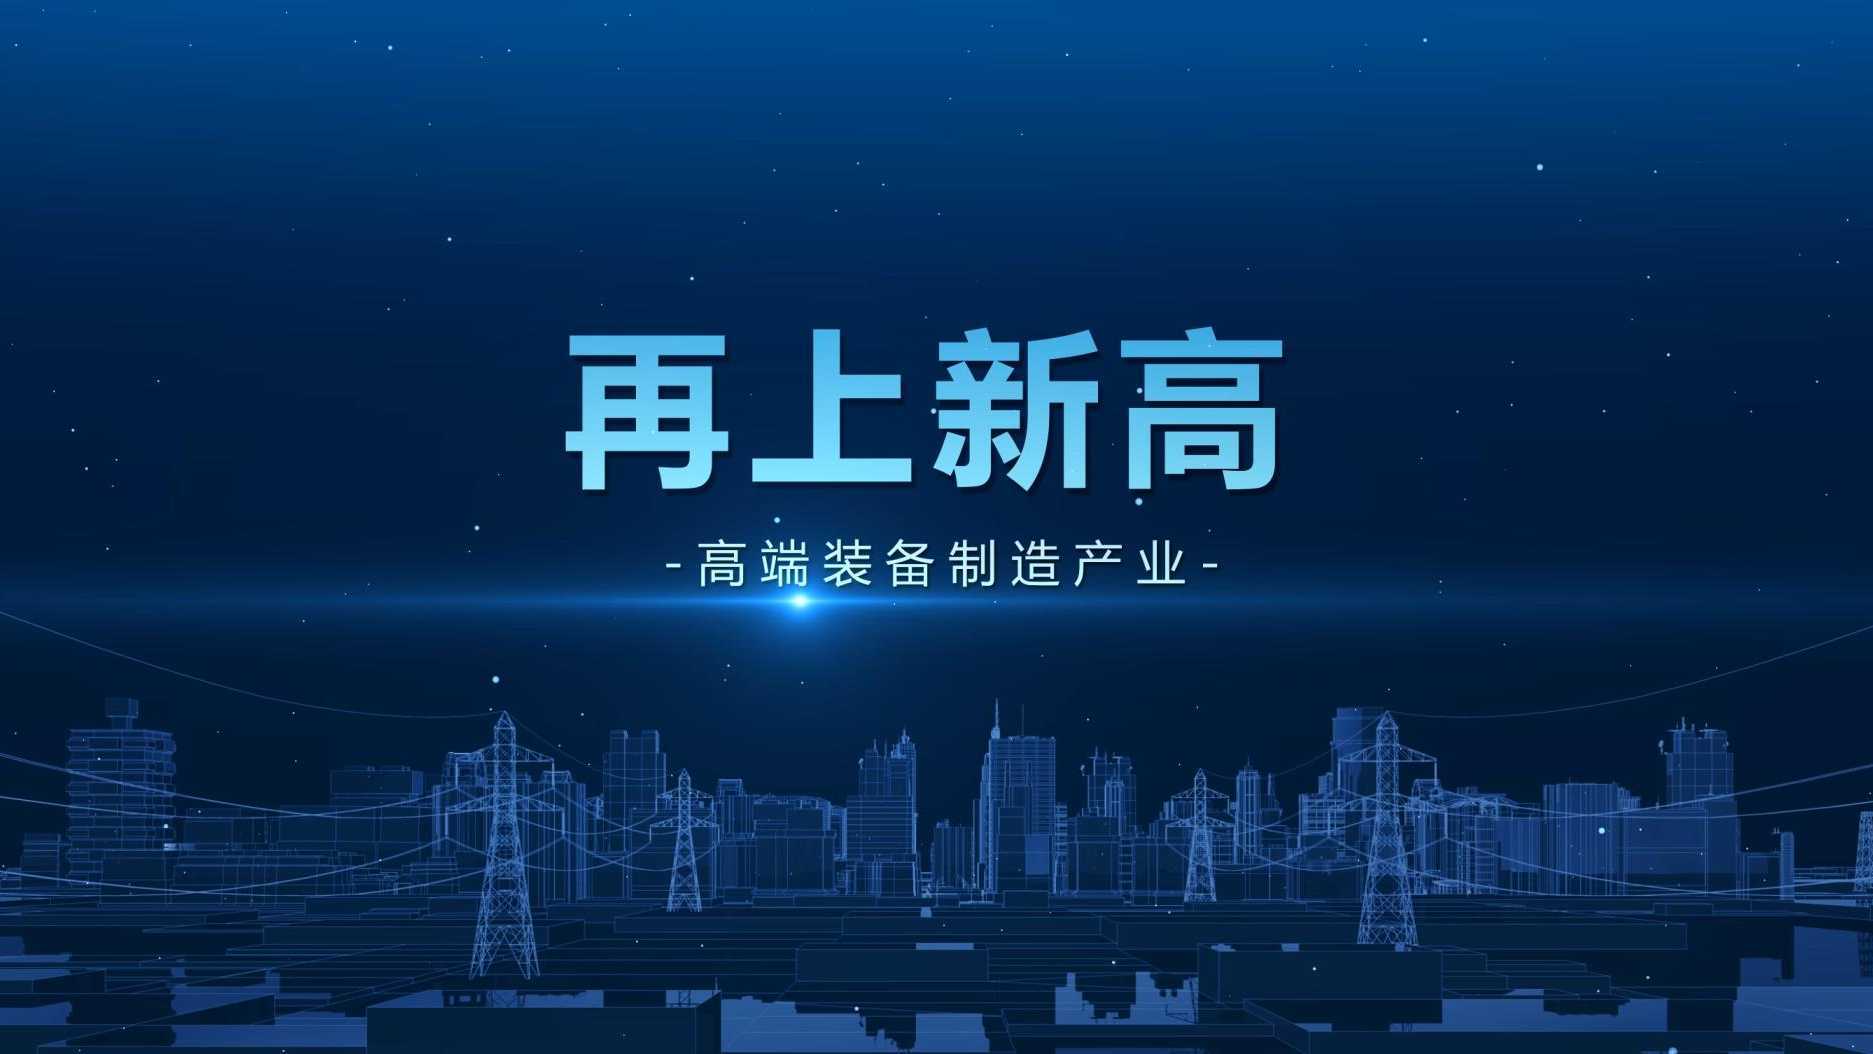 滨州十强产业——高端装备制造产业宣传片